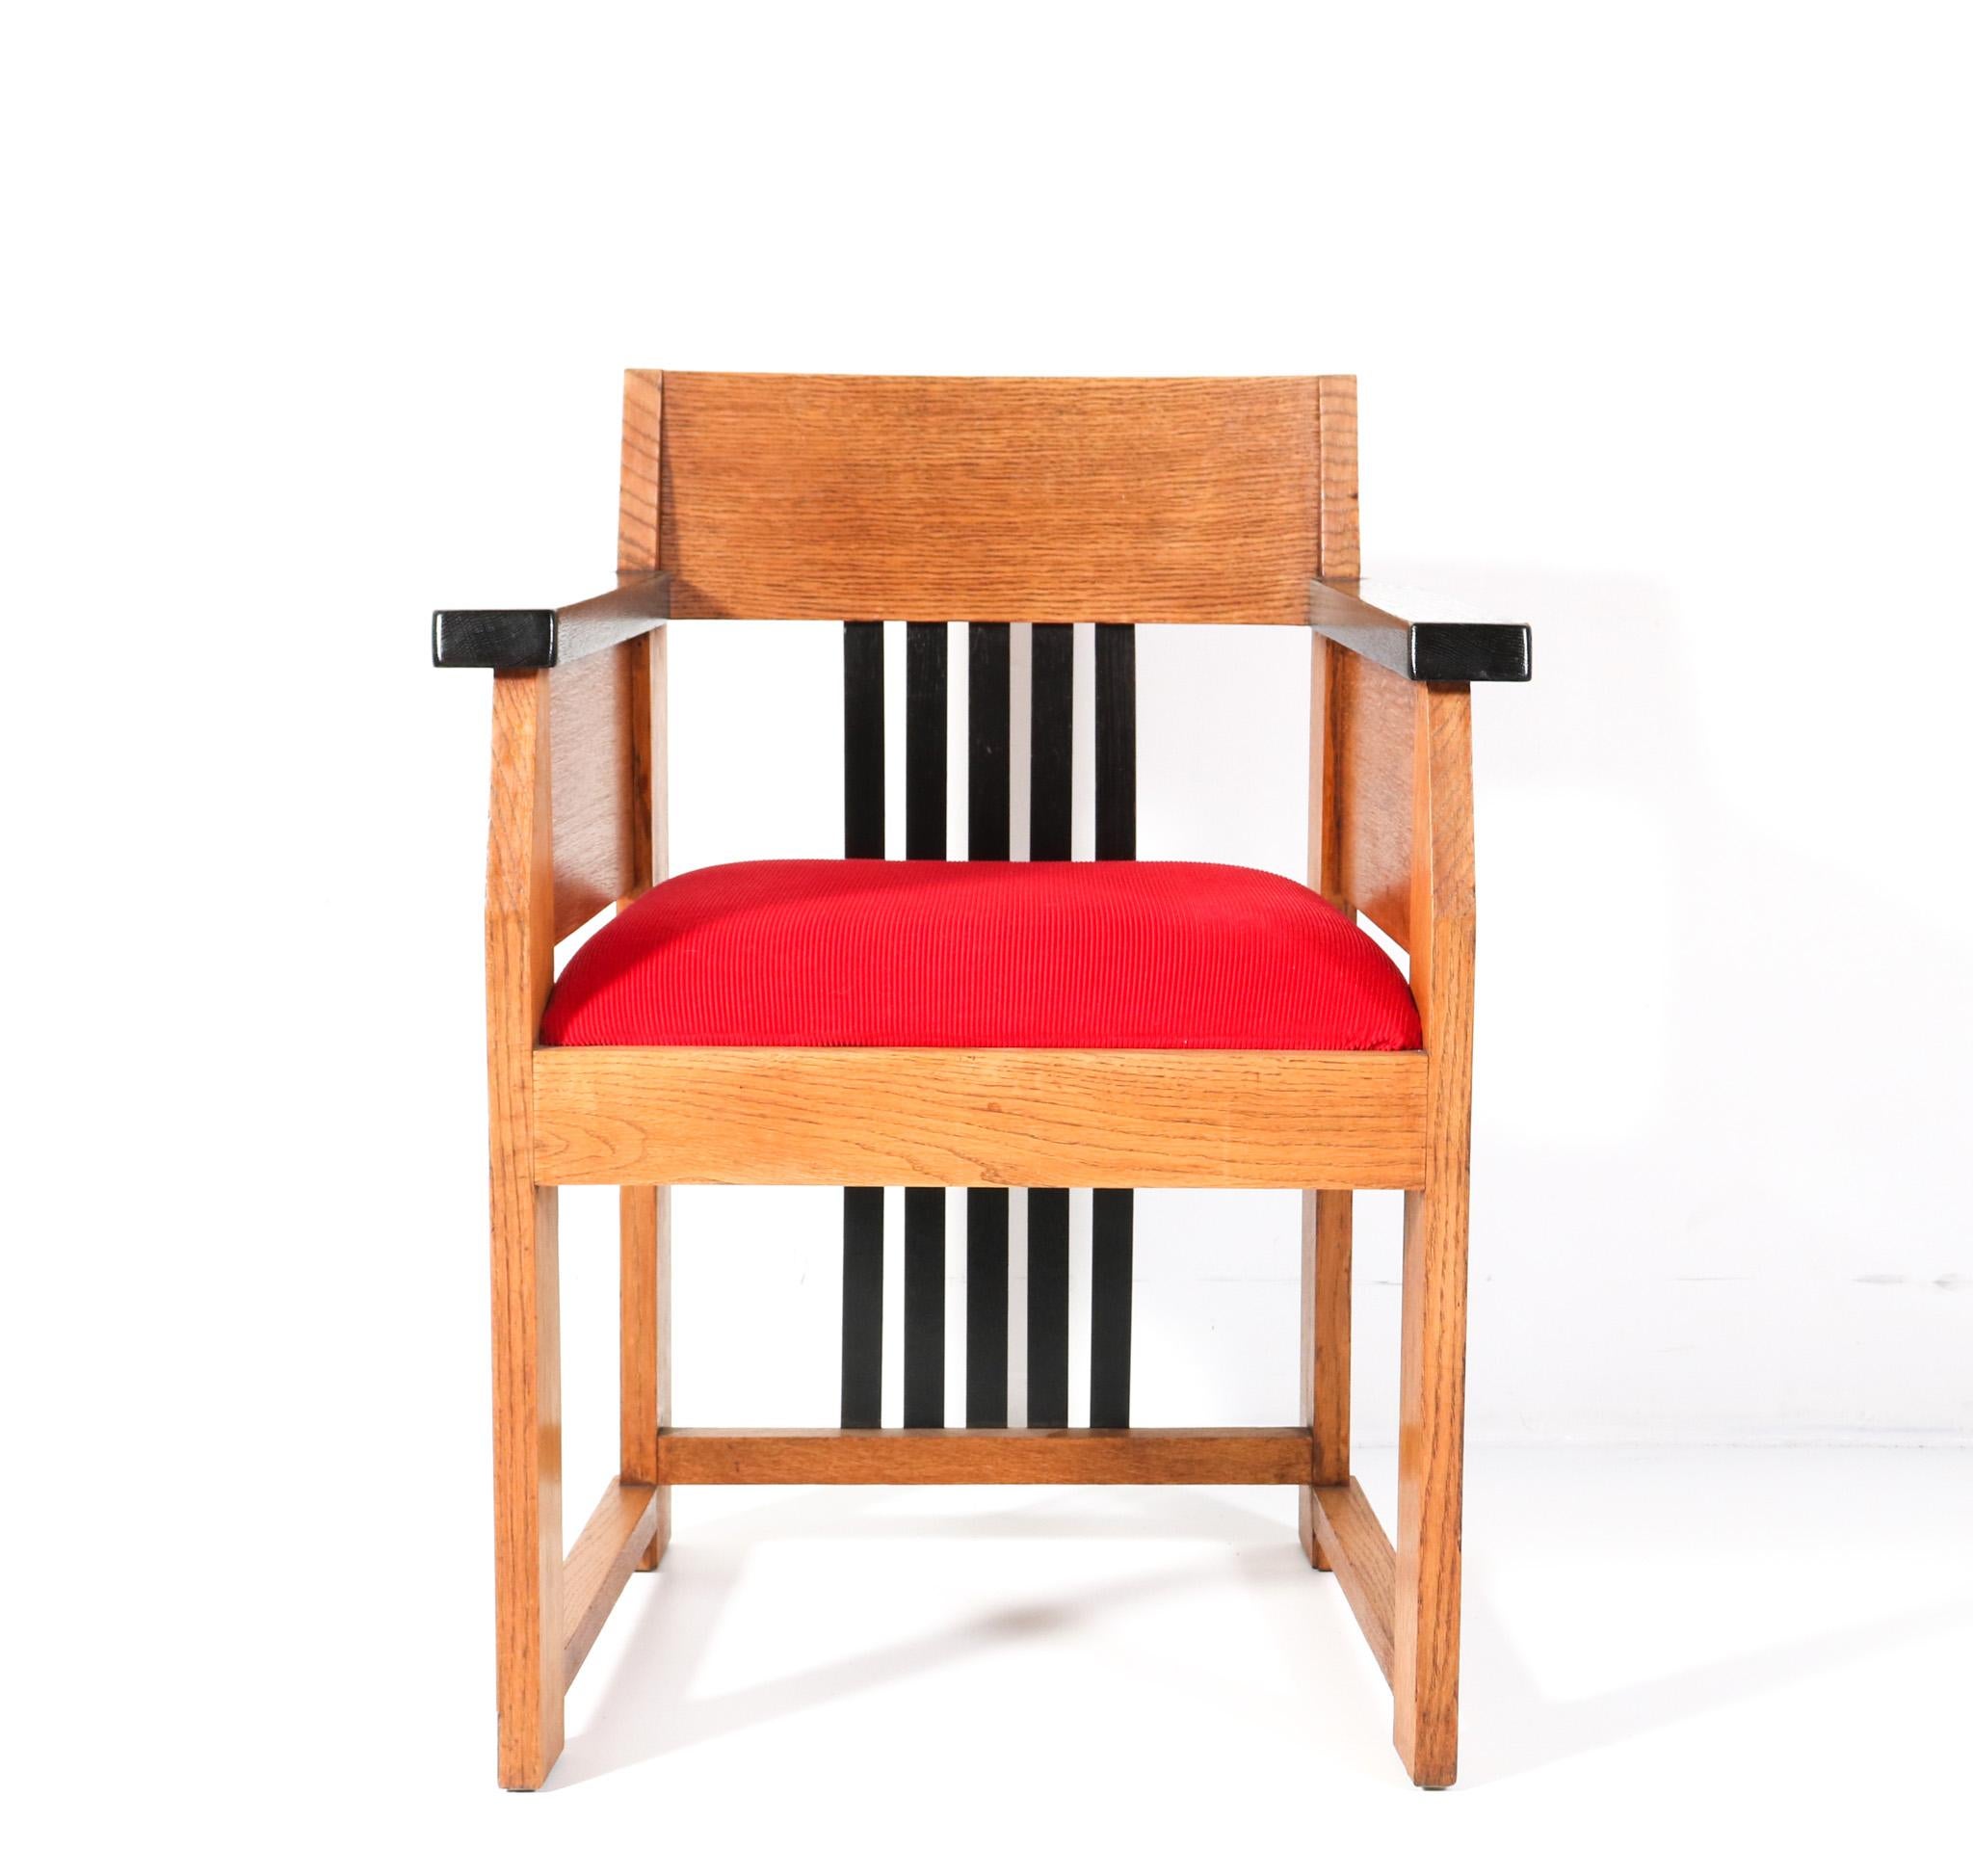 Magnifique et rarissime fauteuil moderniste Art Déco.
Design de Hendrik Wouda pour H. Pander & Zonen Den Haag.
Un design néerlandais saisissant des années 1920.
Base en chêne massif avec dossier et éléments laqués noirs d'origine.
Le siège a été